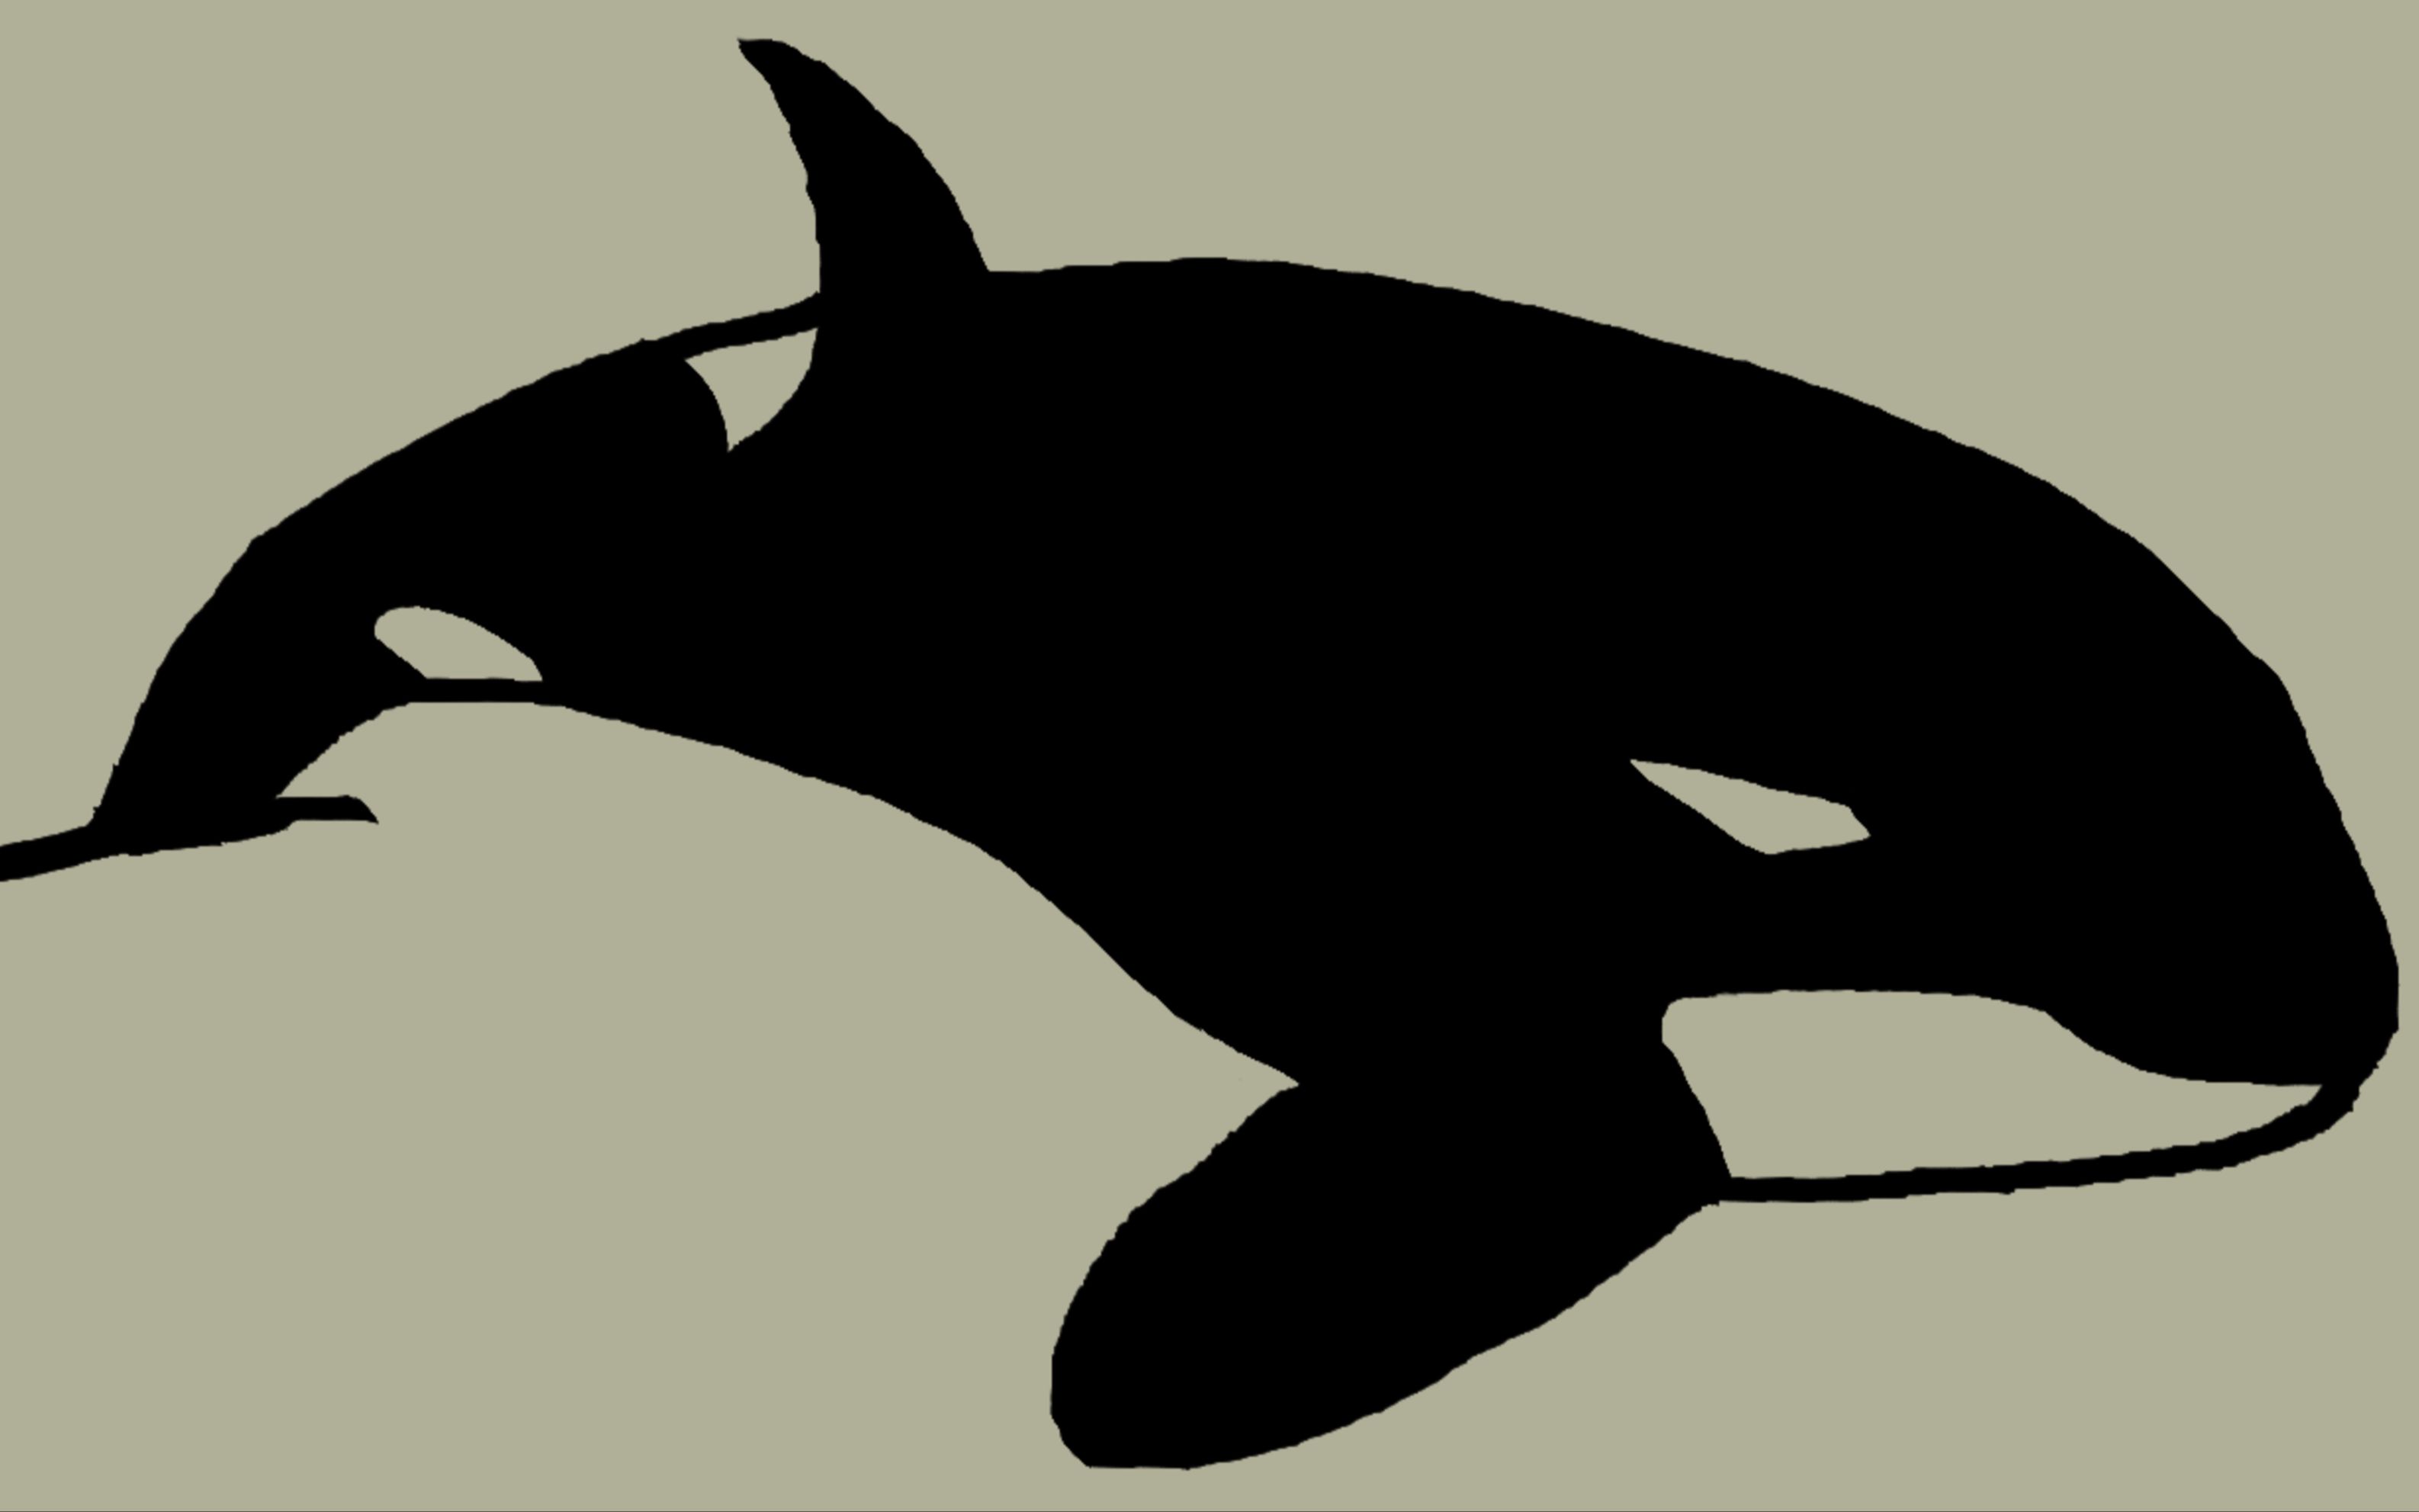 业余画图第九期,简简单单画个虎鲸